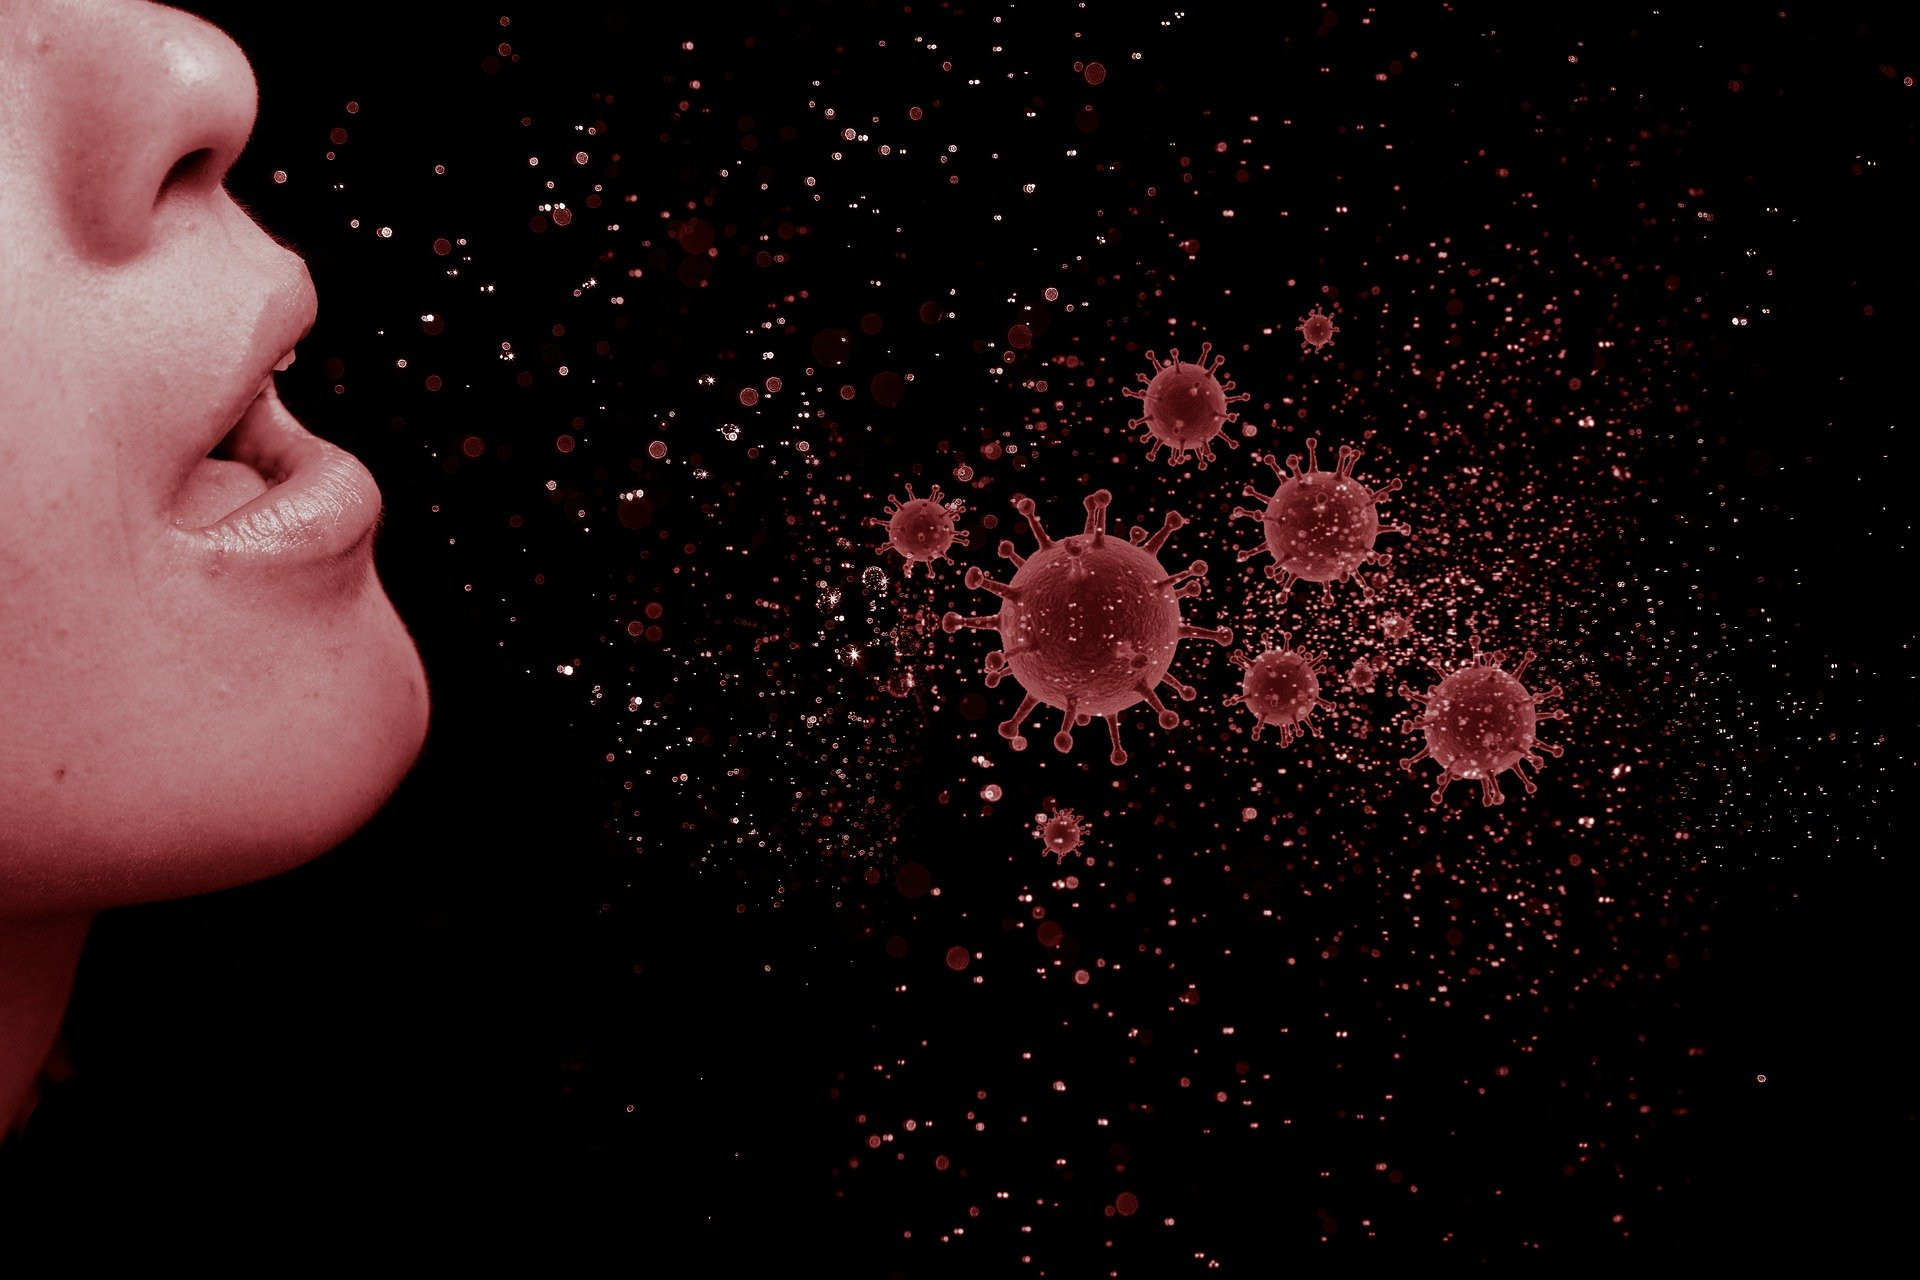 Waspada! Varian Baru Virus Corona "Ihu" Terdeteksi Di Prancis